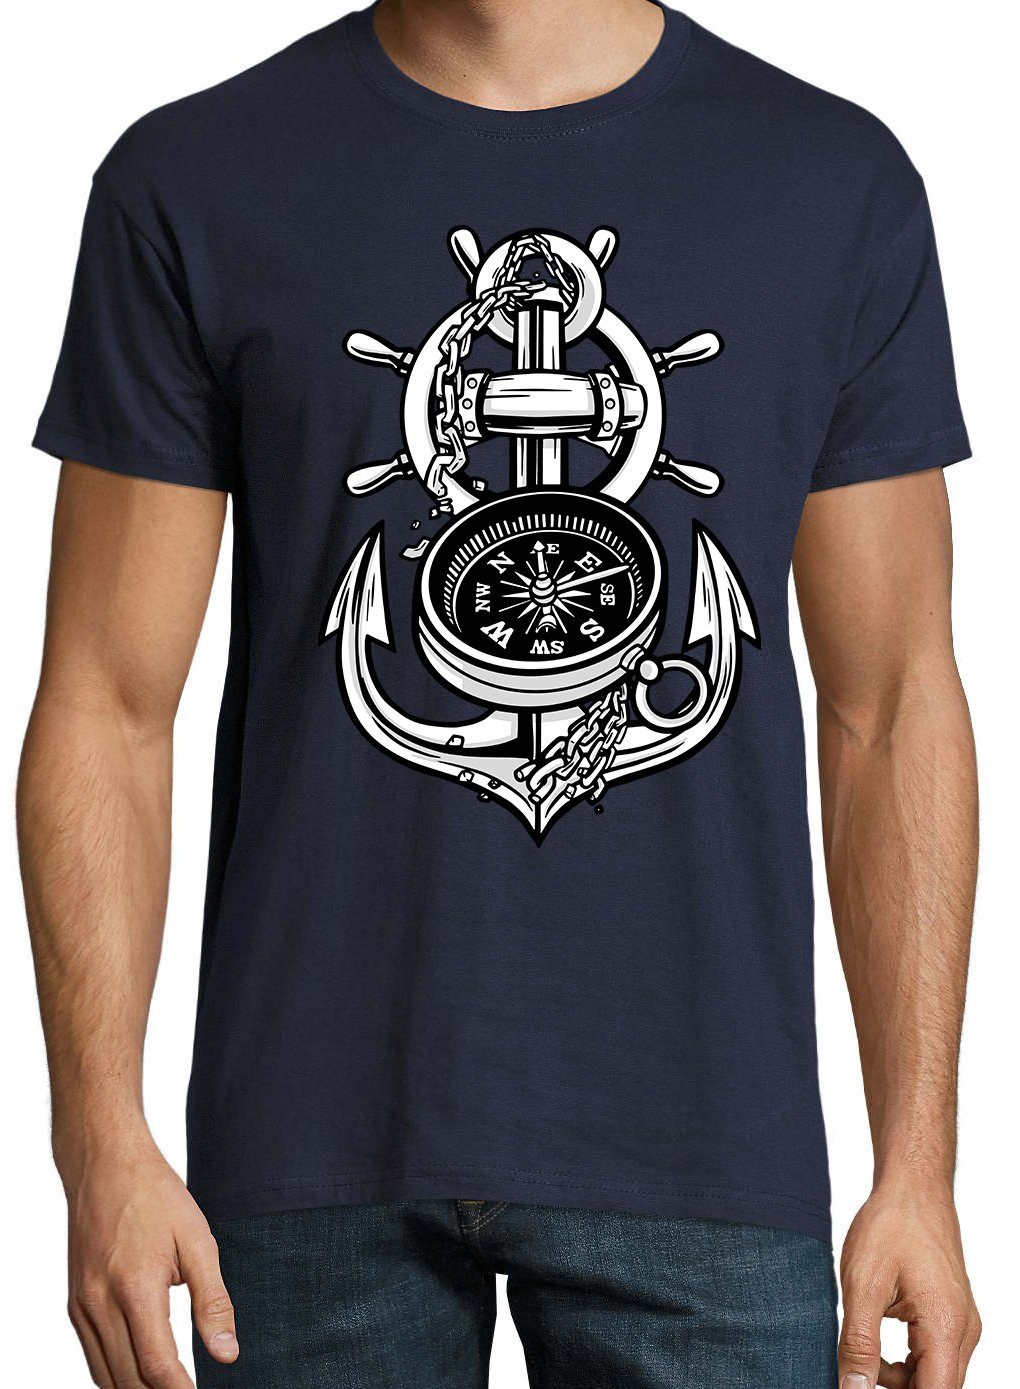 mit Designz Anker Youth Shirt trendigem Herren T-Shirt Kompass Navyblau Frontprint